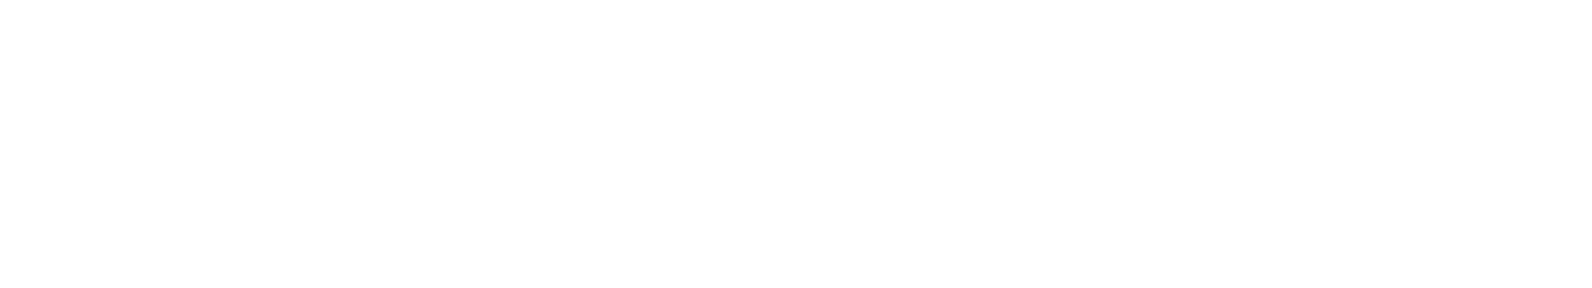 Persimmon Logo groß für dunkle Hintergründe (transparentes PNG)